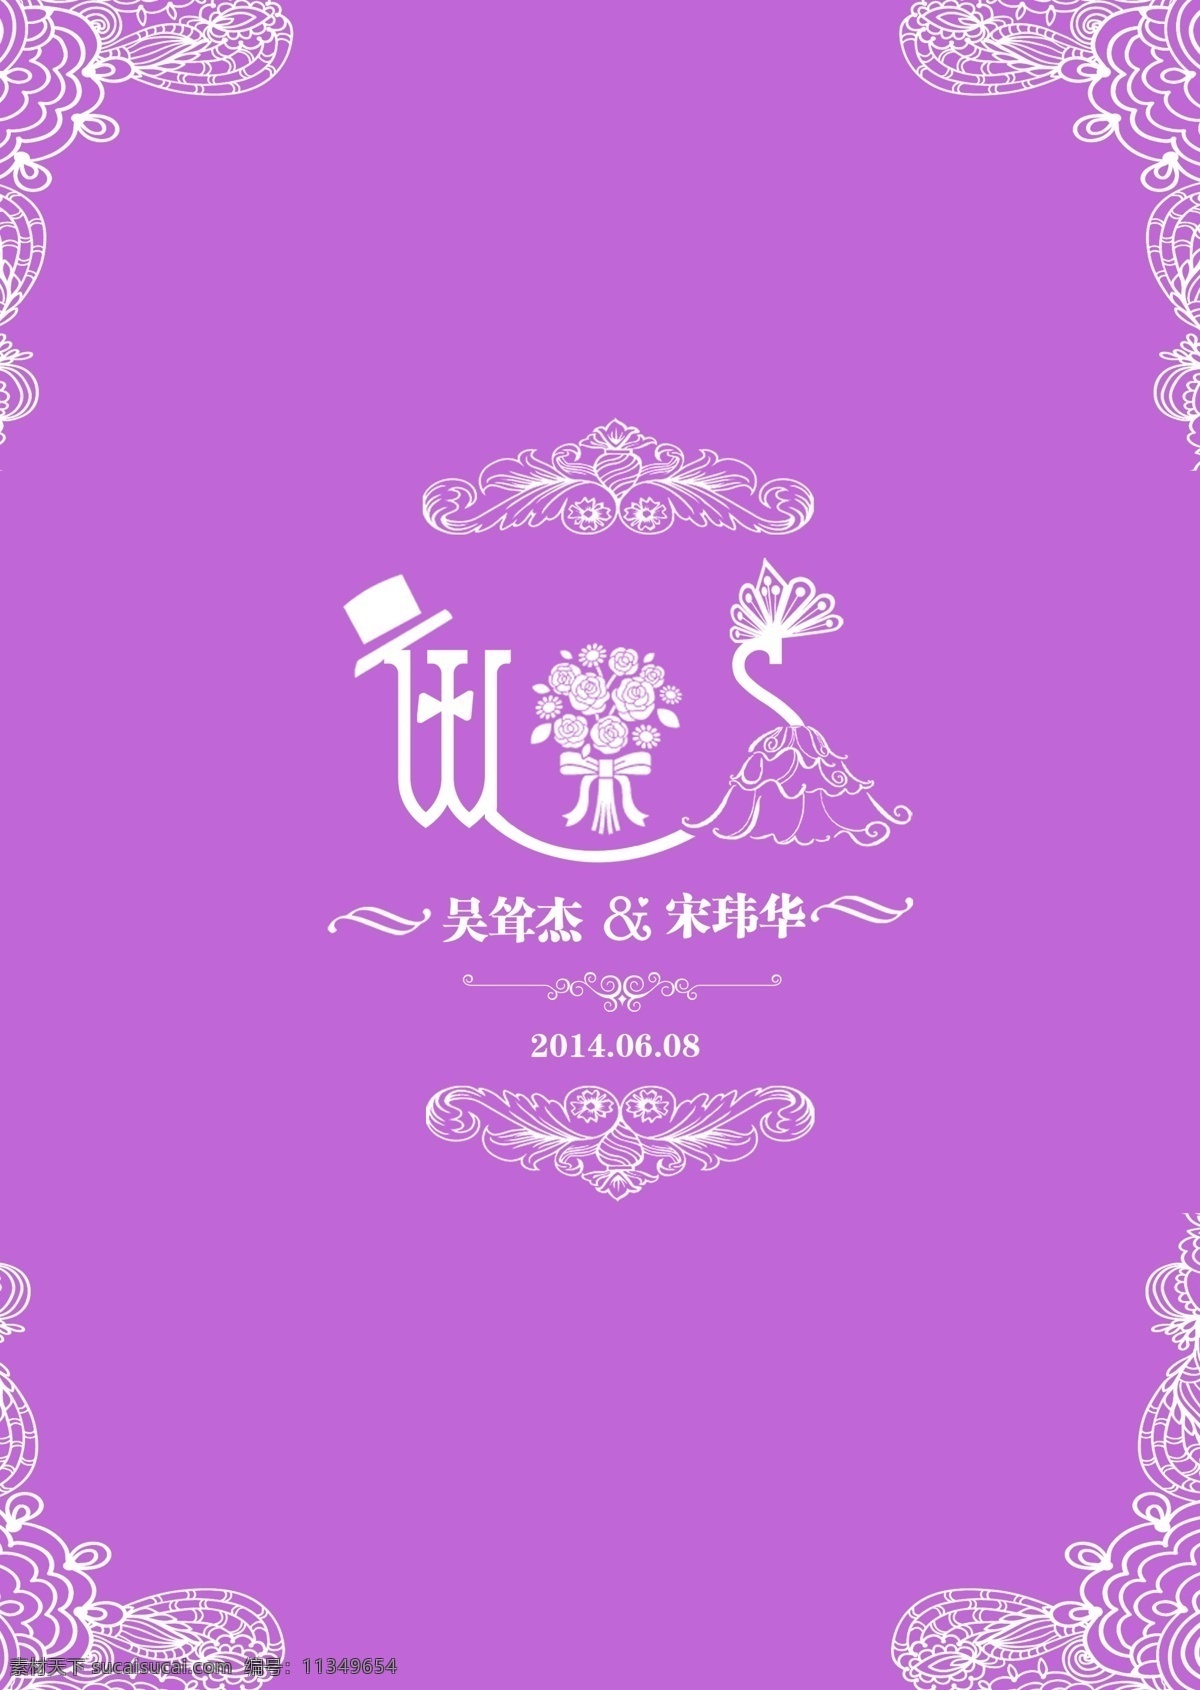 婚礼素材 婚礼 背景 指引牌 字母变形 紫色 花边